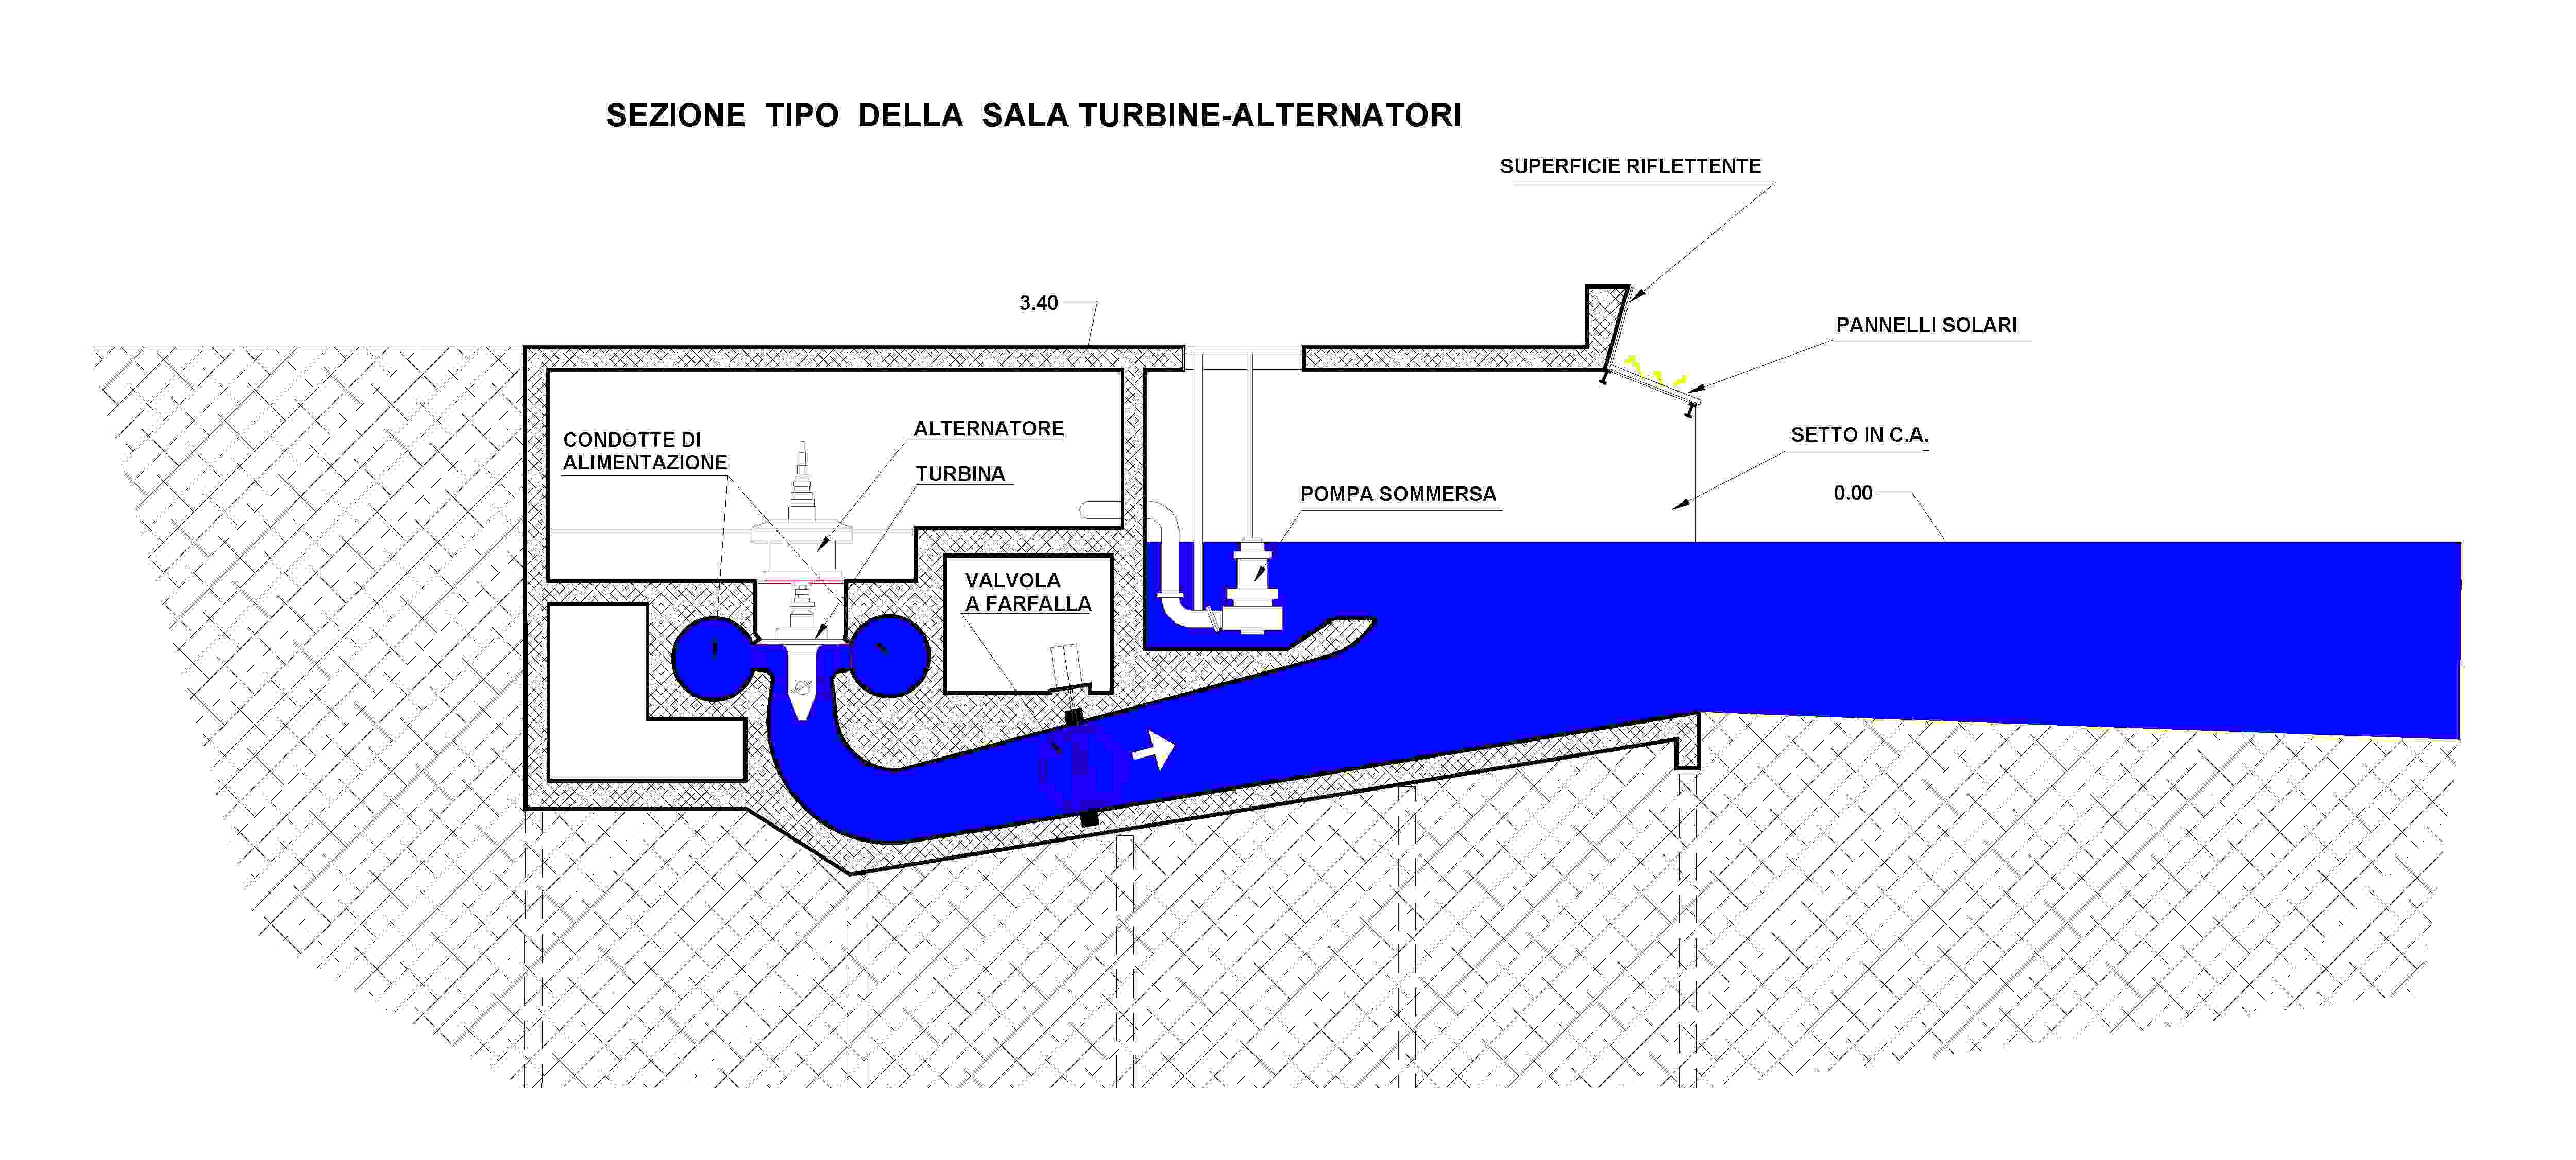 Sezione della sala turbine